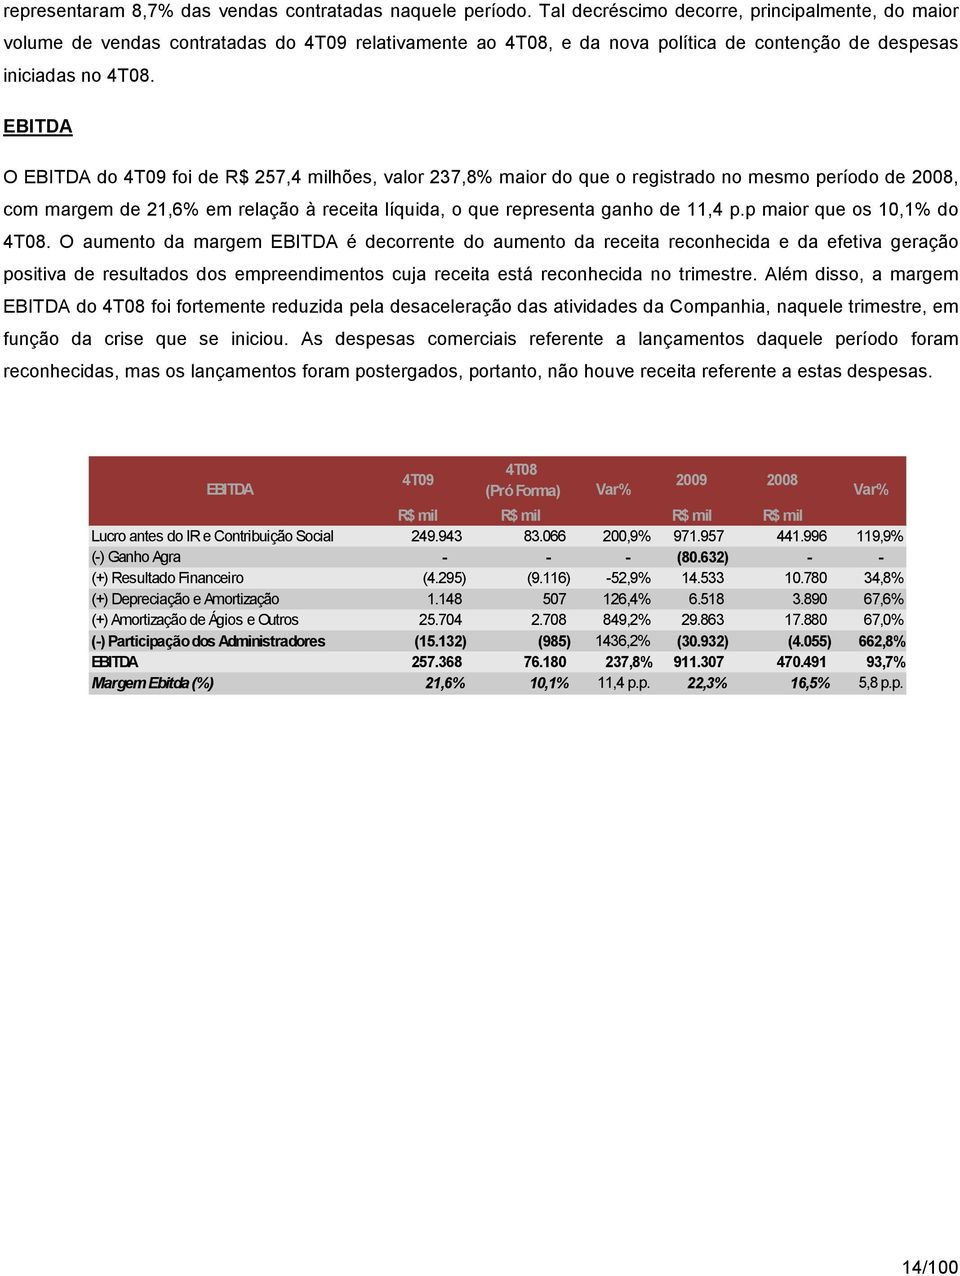 EBITDA O EBITDA do 4T09 foi de R$ 257,4 milhões, valor 237,8% maior do que o registrado no mesmo período de 2008, com margem de 21,6% em relação à receita líquida, o que representa ganho de 11,4 p.